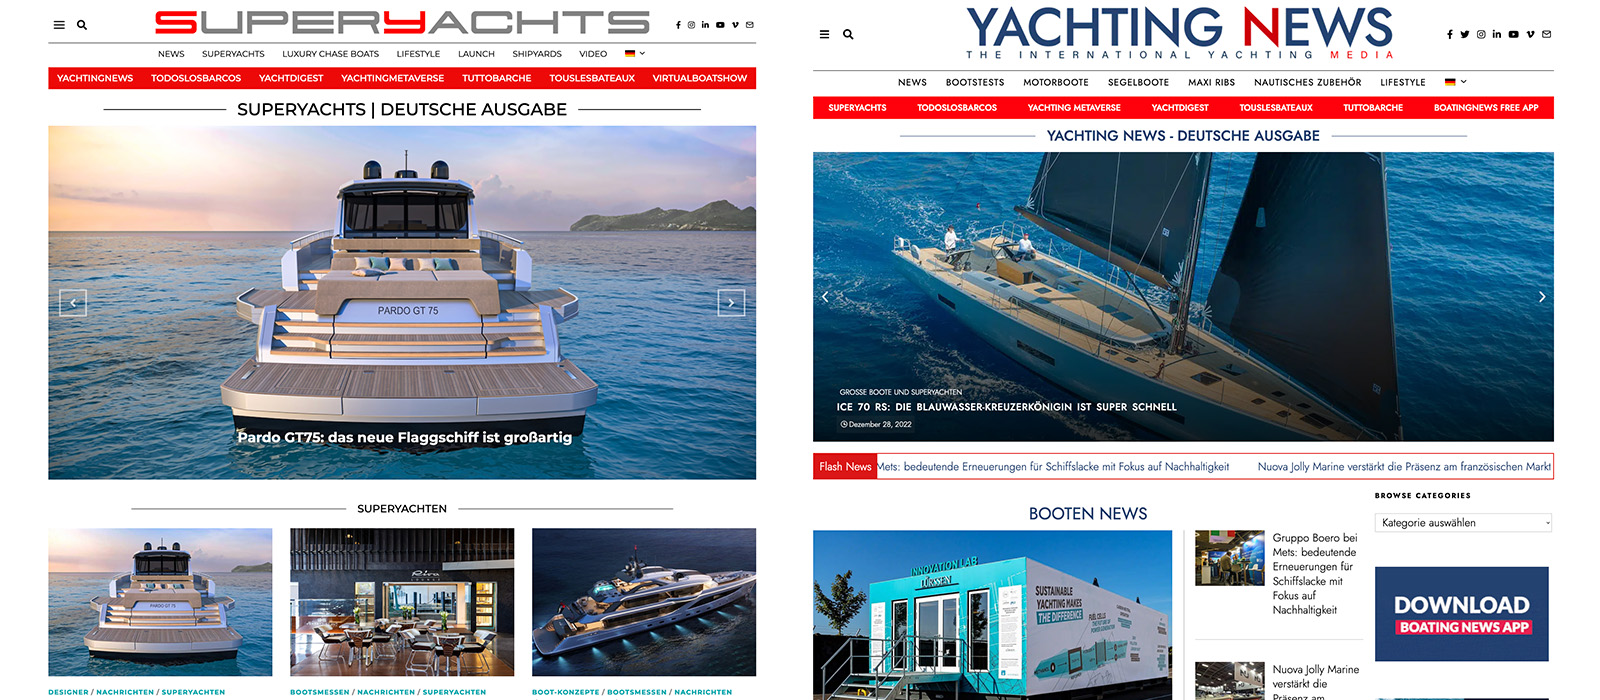 International Yachting Media lanza dos nuevas ediciones en alemán